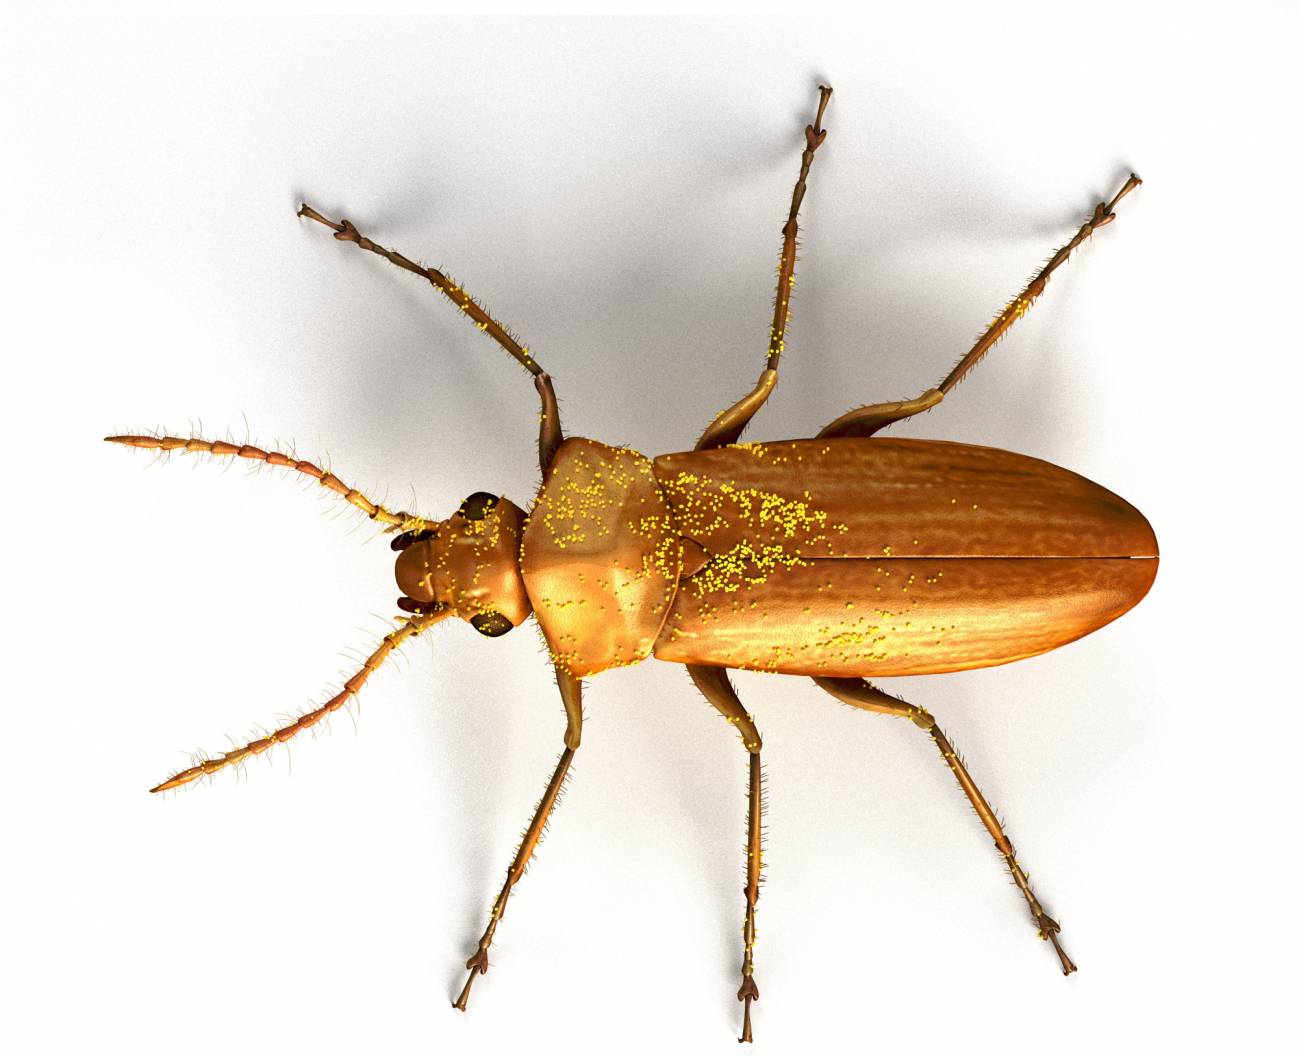 Darwinylus marcosi, un escarabajo que vivió hace 105 millones de años, seguía polinizando gimnospermas (plantas sin flor), cuando en los ecosistemas terrestres ya empezaban a abundar las angiospermas (plantas con flor). Imagen: José Antonio Peñas 